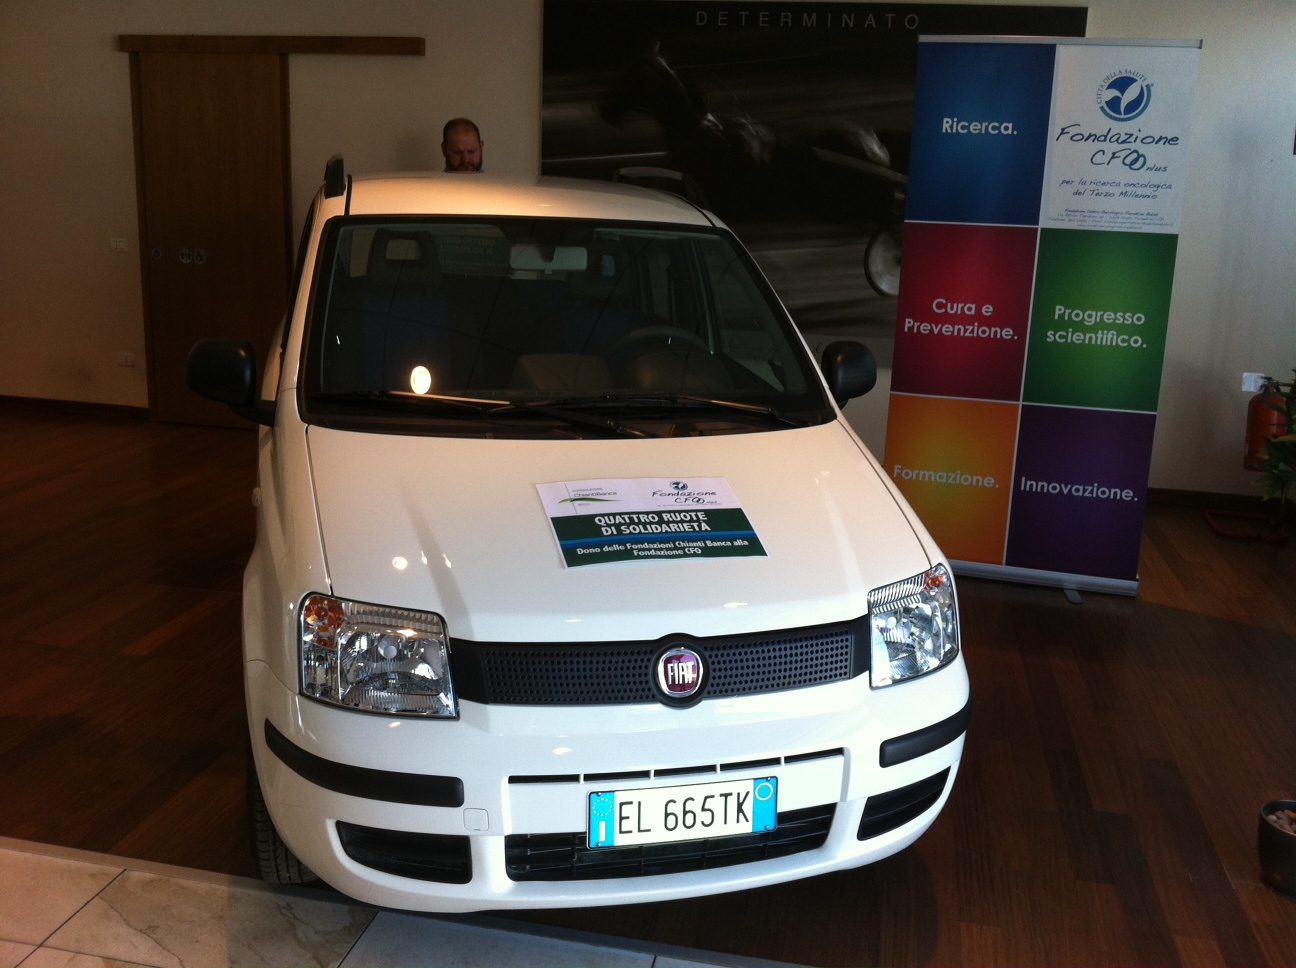 Consegnata l’auto Fiat Panda alla Fondazione CFO Onlus